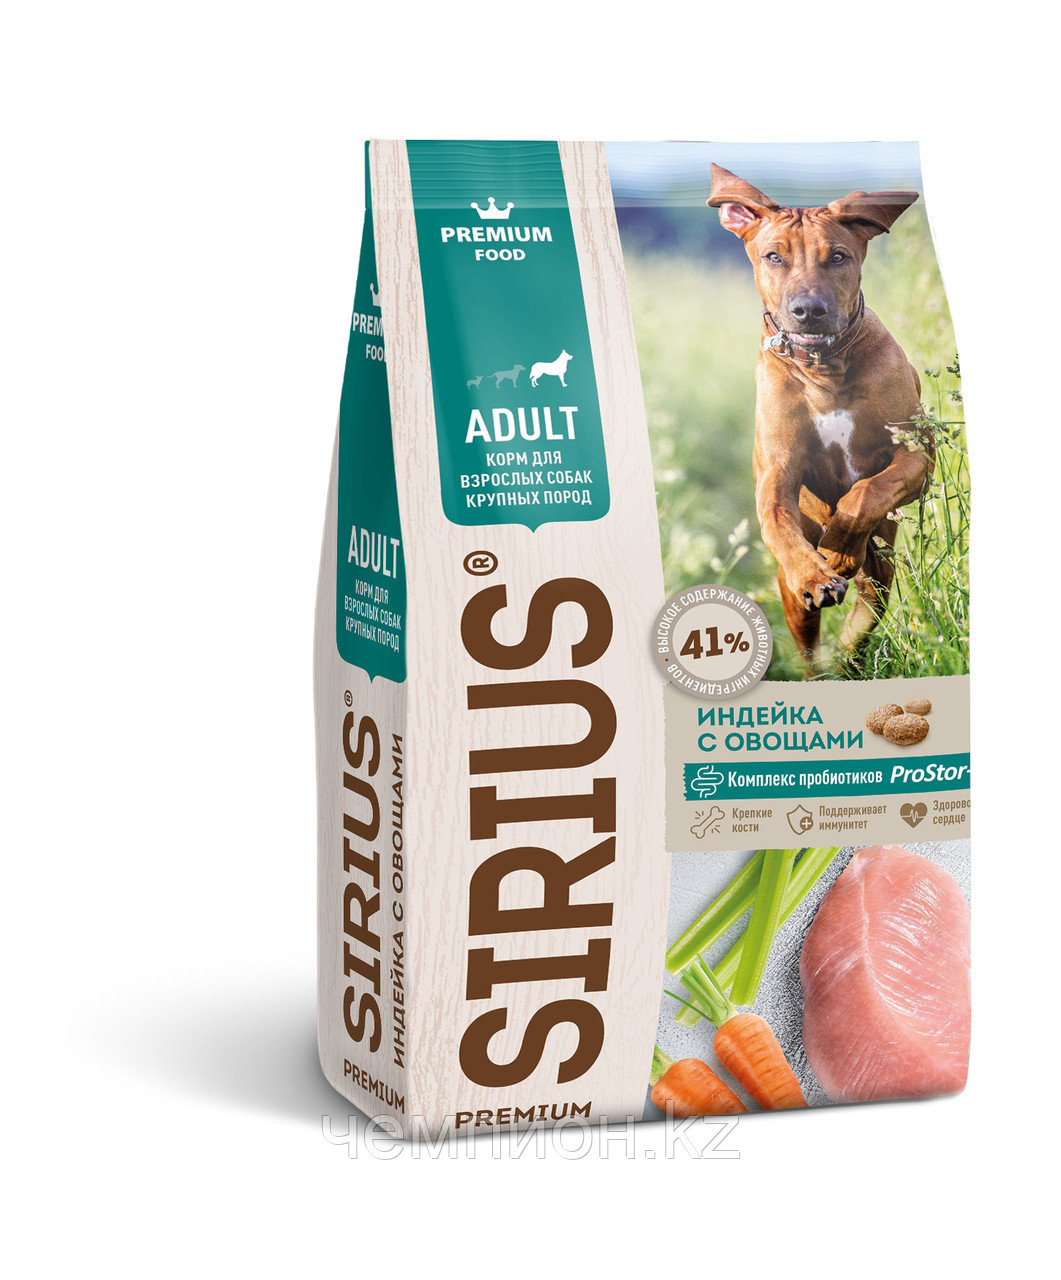 945519 SiRiuS, Сириус корм для собак крупных пород, индейка с овощами, уп. 2кг.